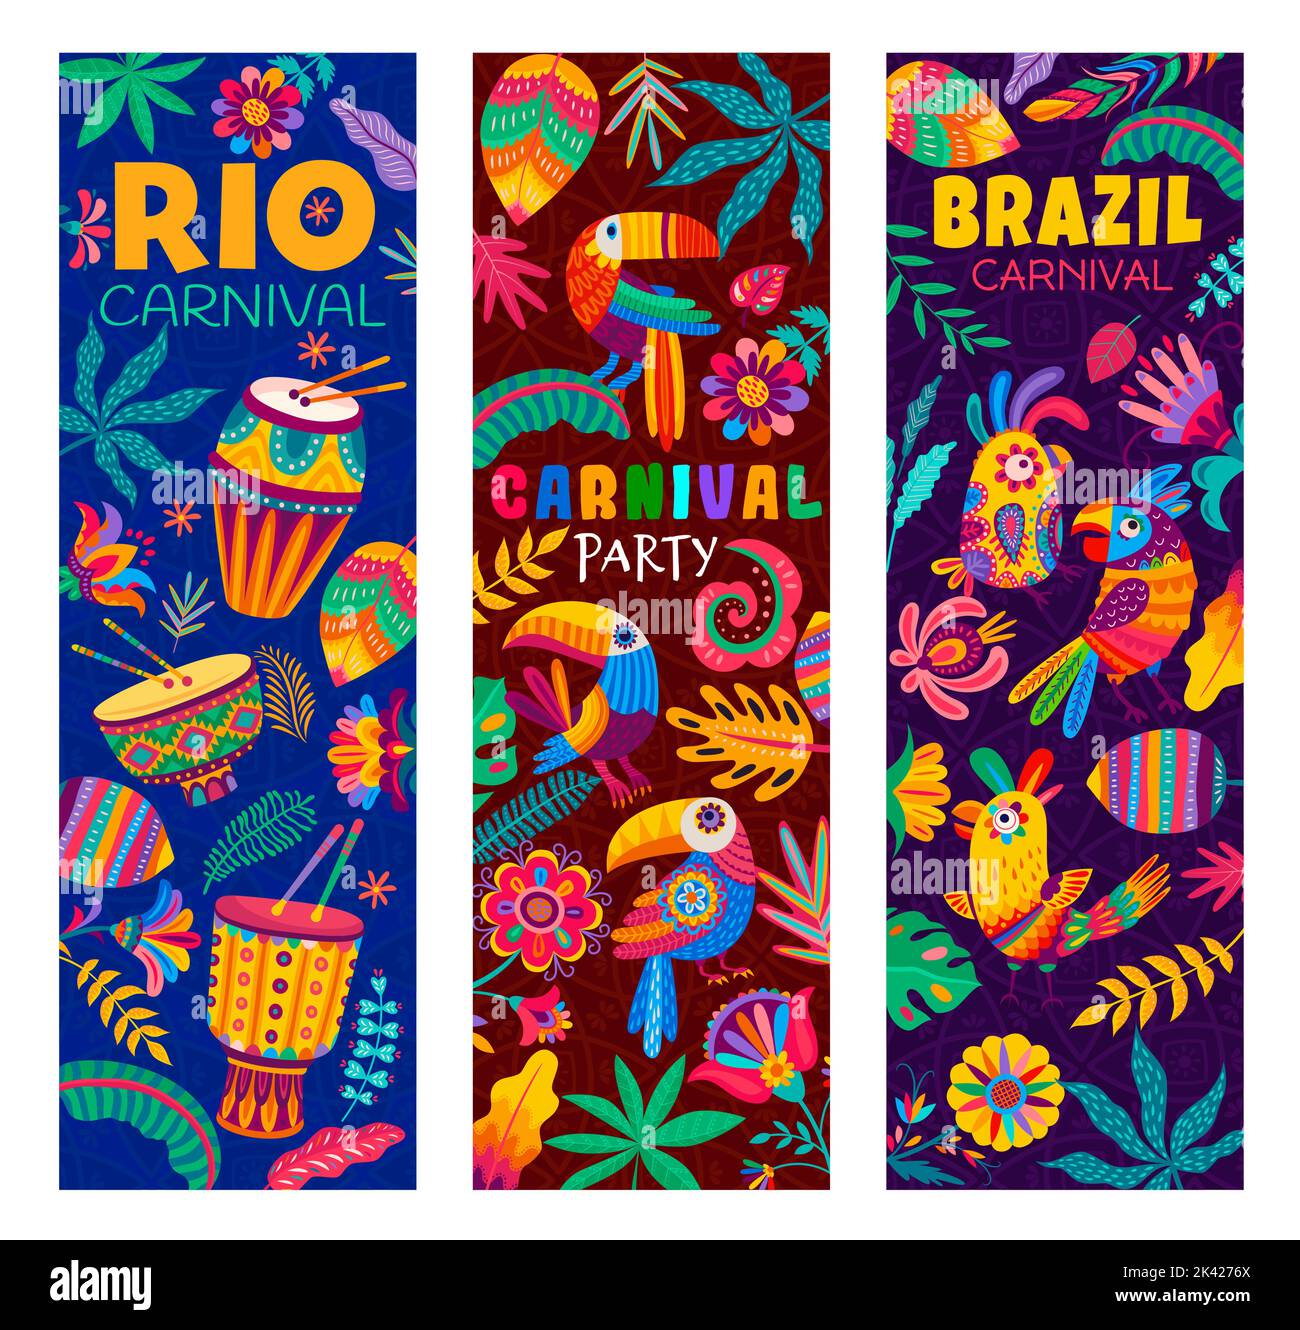 Brasilianische Rio Karneval Party Banner, Cartoon Tukan und Papagei Vögel, Trommeln, Blumen, Lianen und Pflanzen. Vector Brasilien Karneval von Samba Tanz und Musik, Rio de Janeiro Festival, Urlaub Poster Stock Vektor